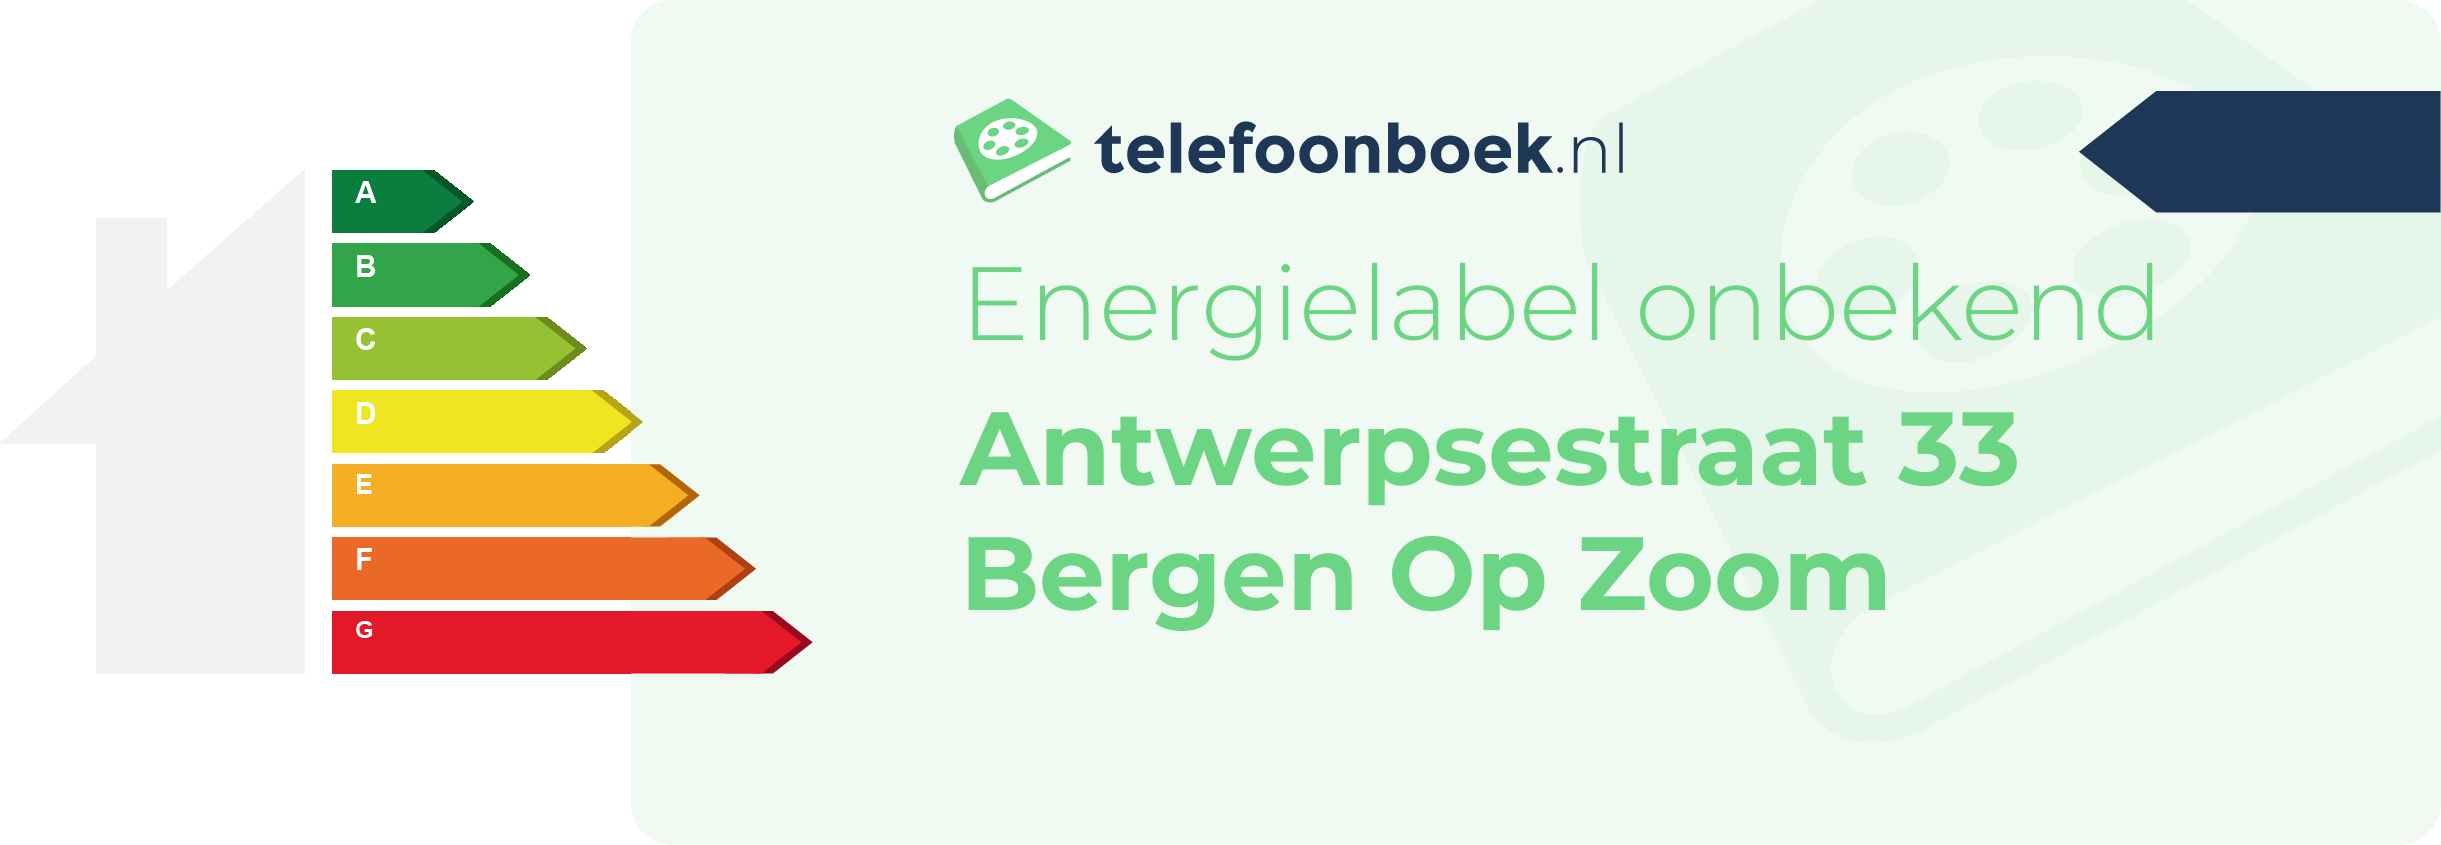 Energielabel Antwerpsestraat 33 Bergen Op Zoom